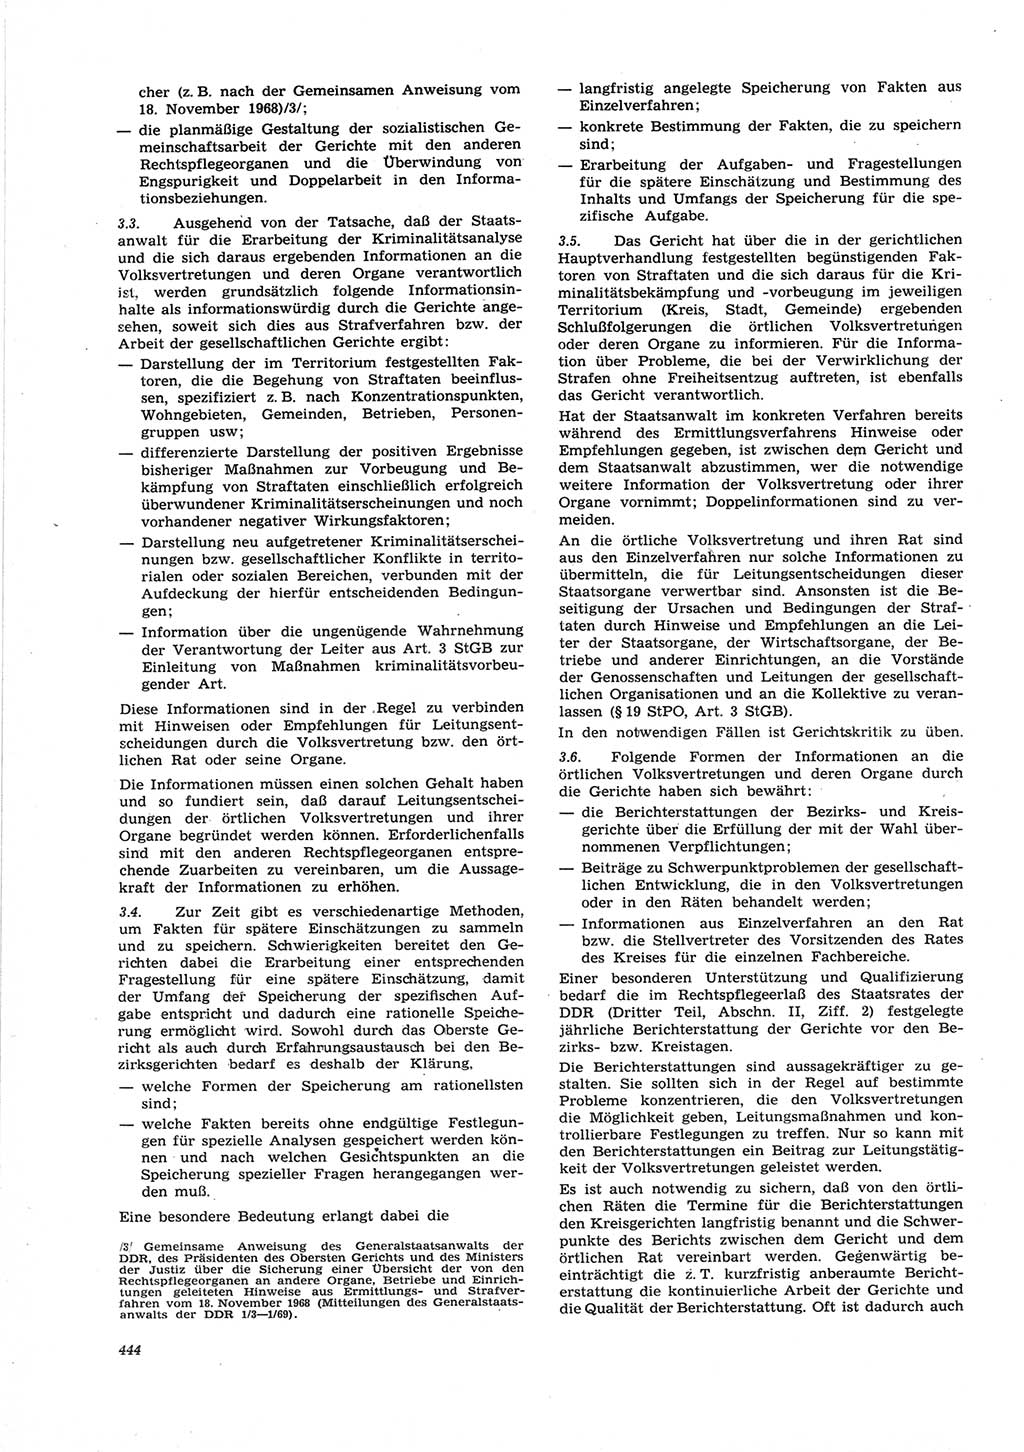 Neue Justiz (NJ), Zeitschrift für Recht und Rechtswissenschaft [Deutsche Demokratische Republik (DDR)], 25. Jahrgang 1971, Seite 444 (NJ DDR 1971, S. 444)